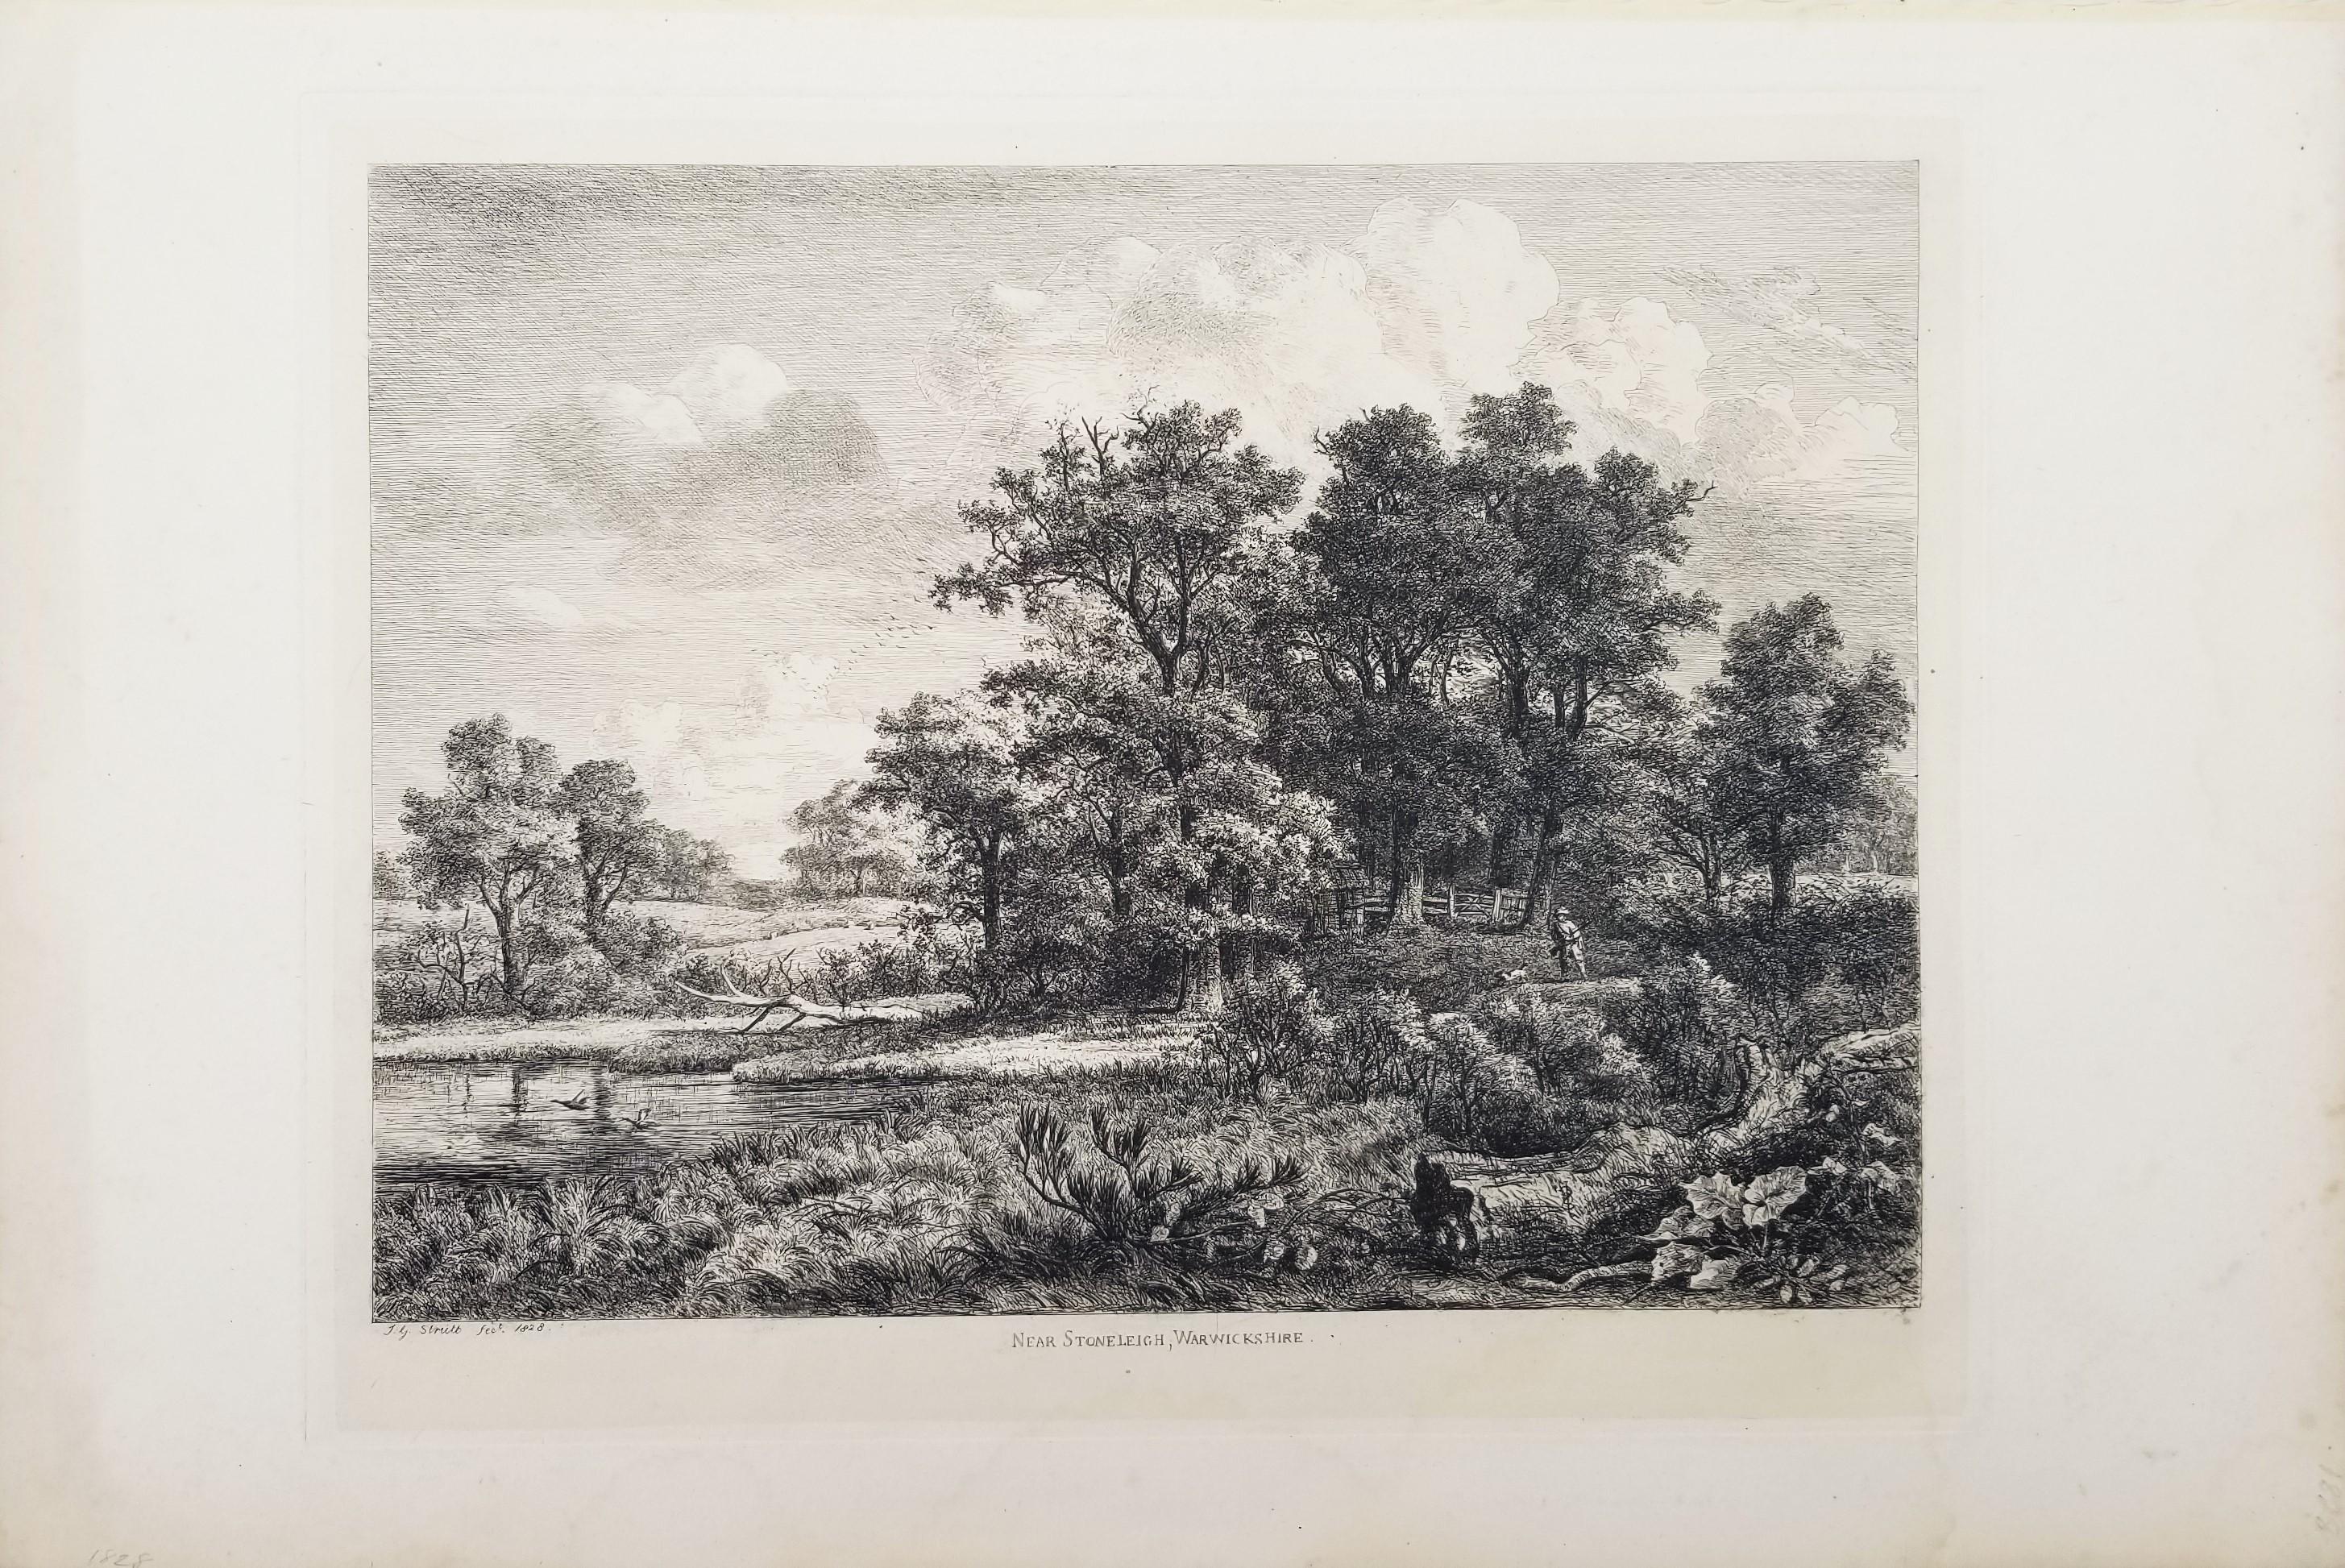 Near Stoneleigh, Warwickshire /// Britische viktorianische Landschaft, Radierung, Schwarze Kunst, Radierung – Print von Jacob George Strutt